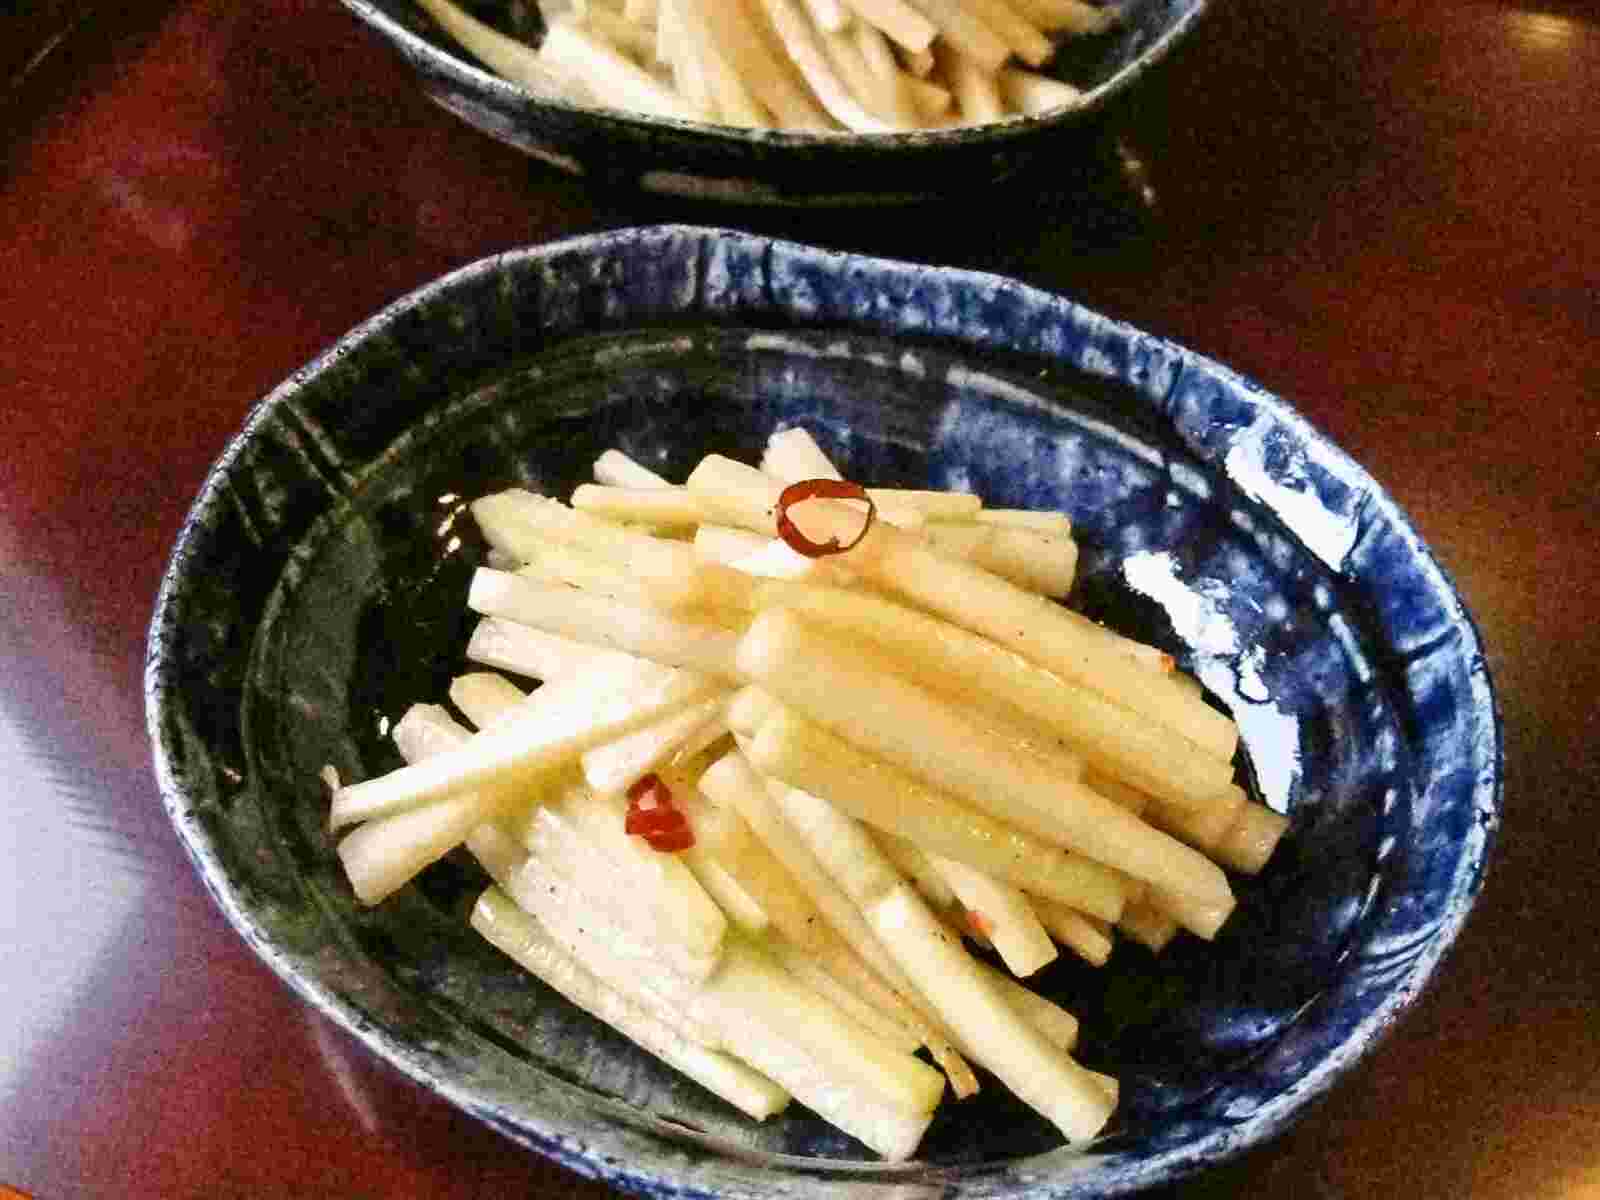 Recipes for Tom: Daikon no kawa no kinpira / kinpira saute of daikon radish skin